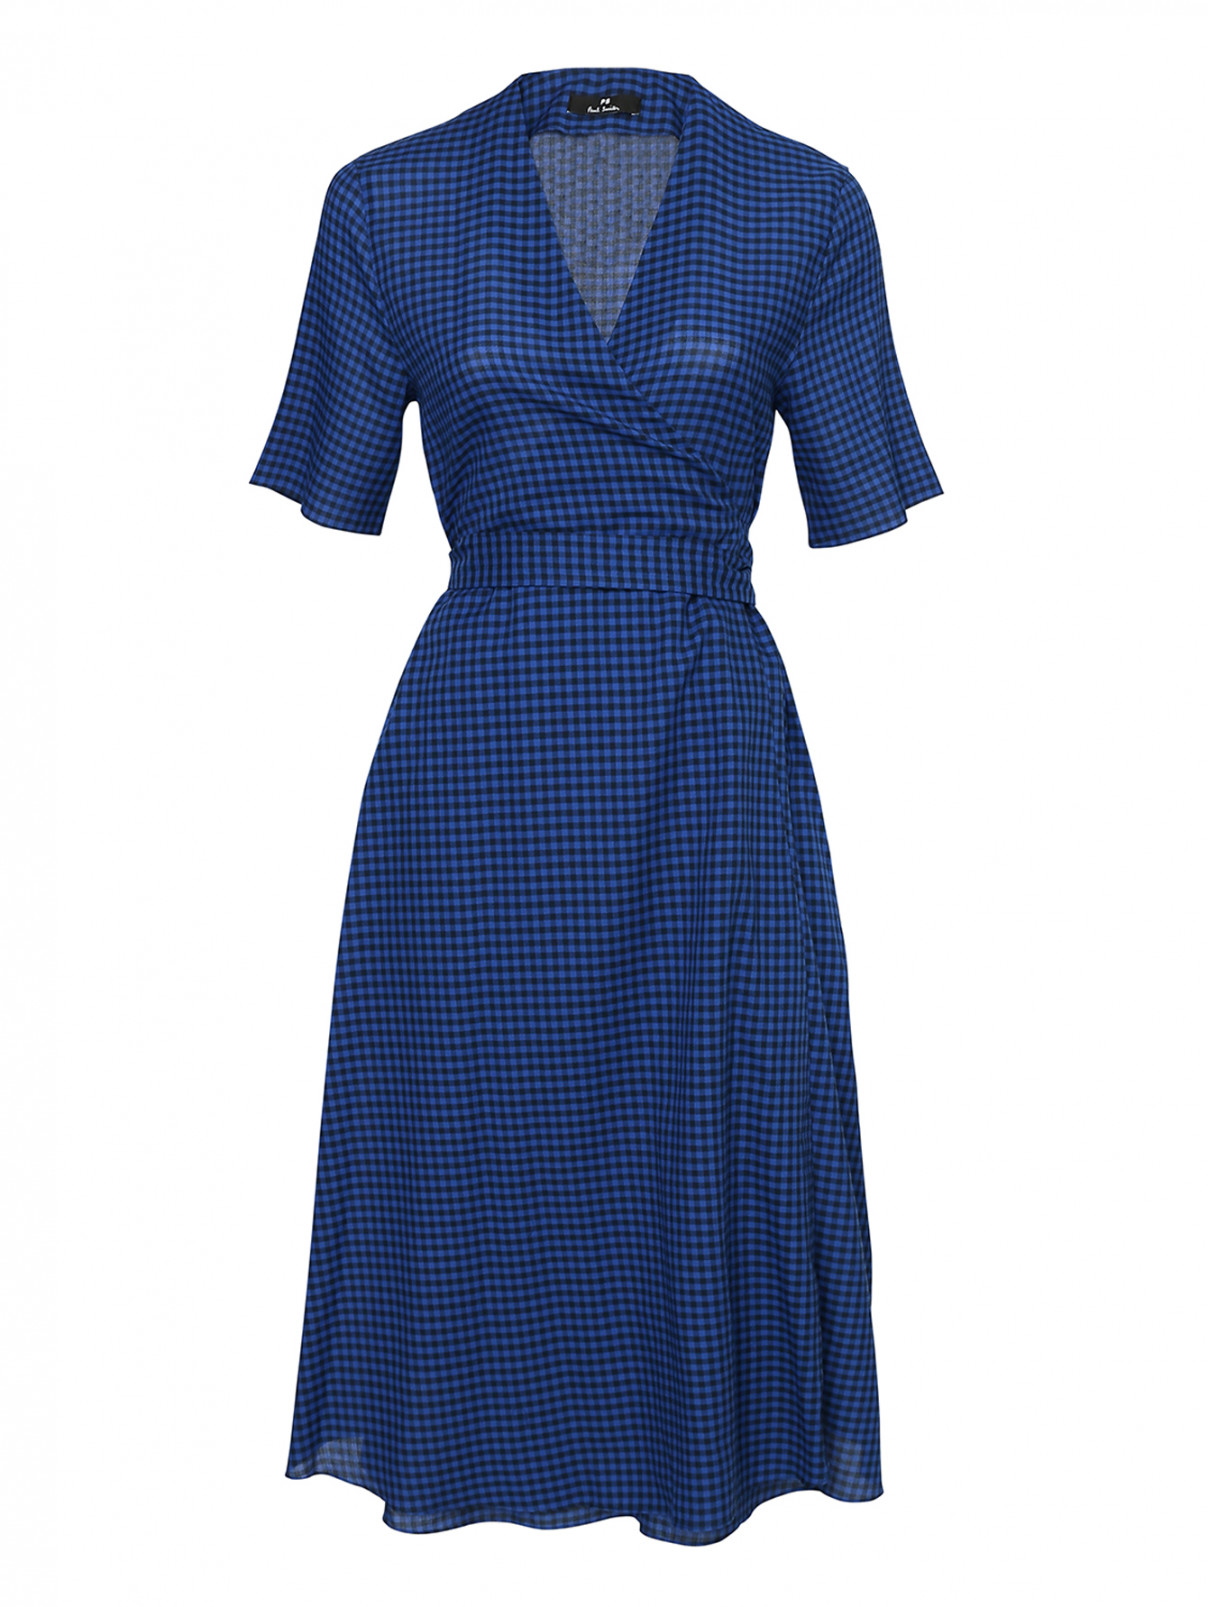 Платье хлопковое, с узором клетка Paul Smith  –  Общий вид  – Цвет:  Синий